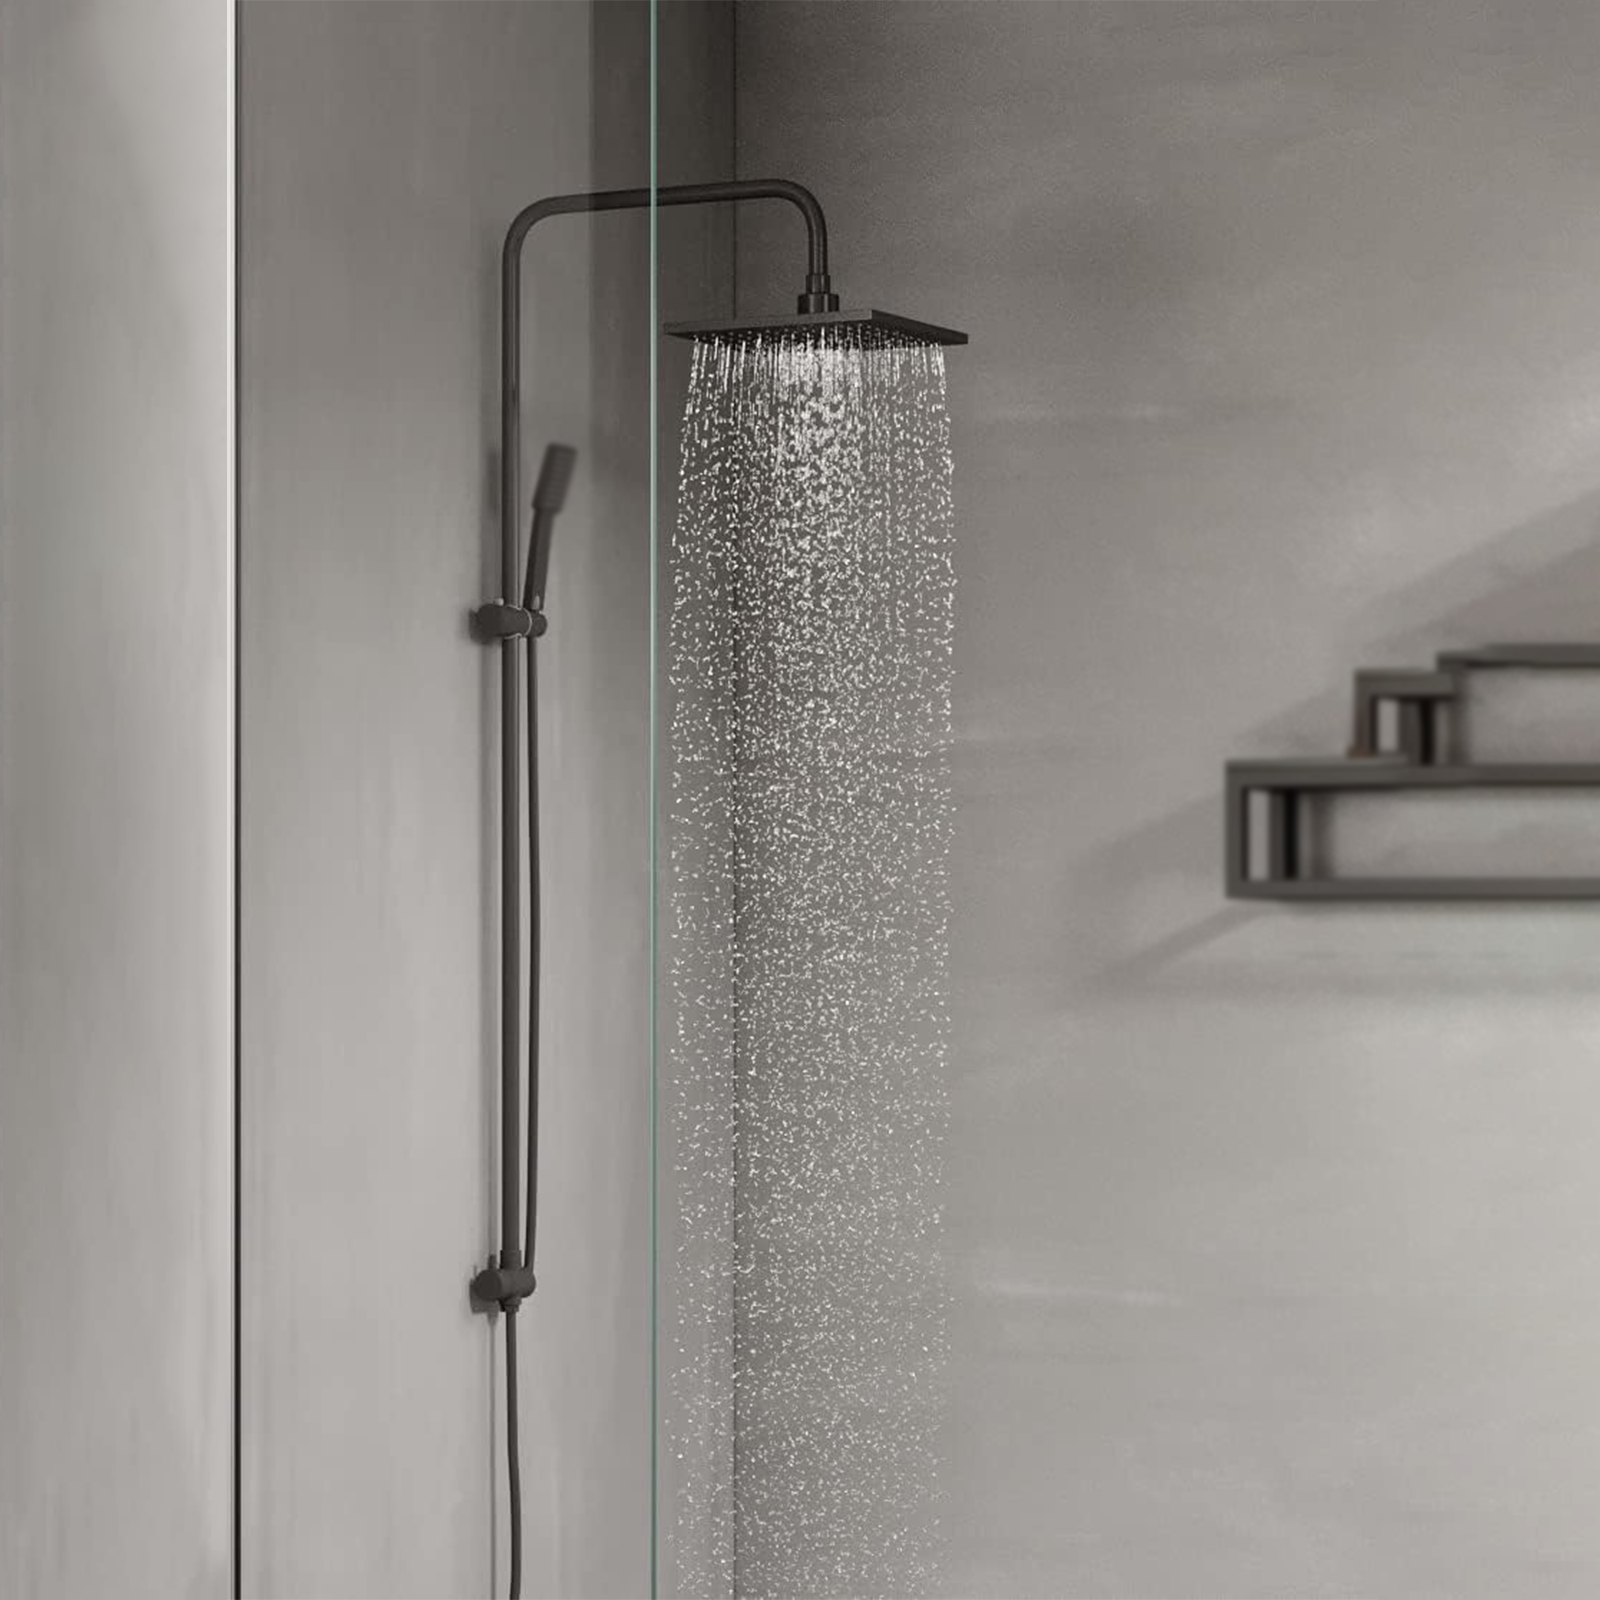 Columna de ducha orientable cuadrada de aluminio negro mate con teleducha de 3 chorros y barra corredera